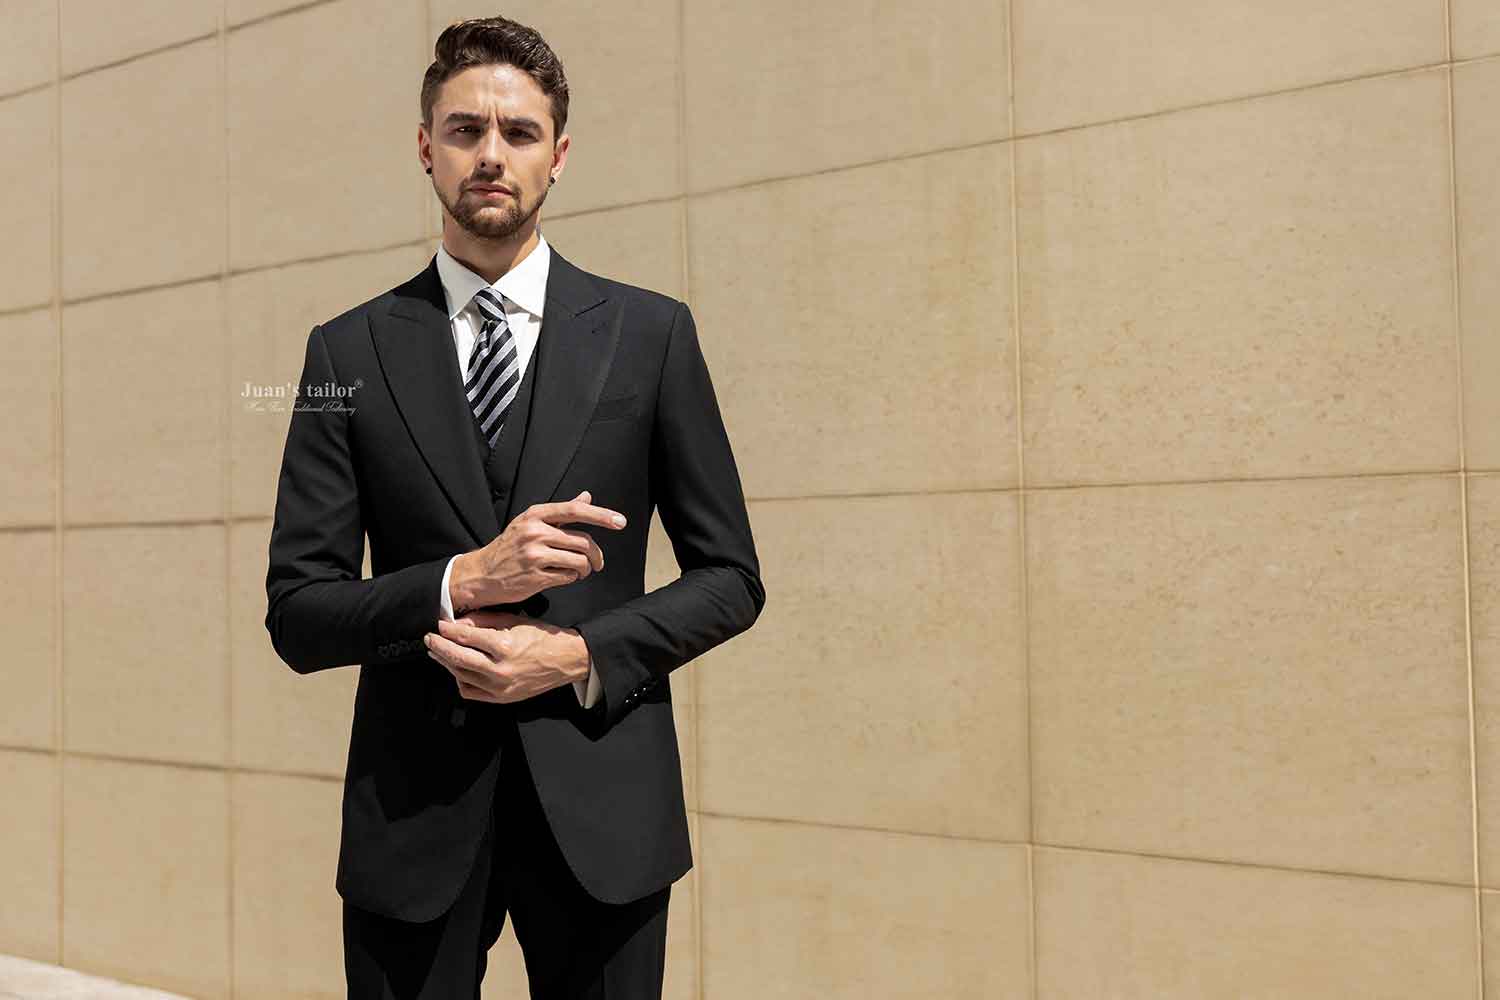 Bộ suit đen cao cấp với phong cách nam tính, mạnh mẽ